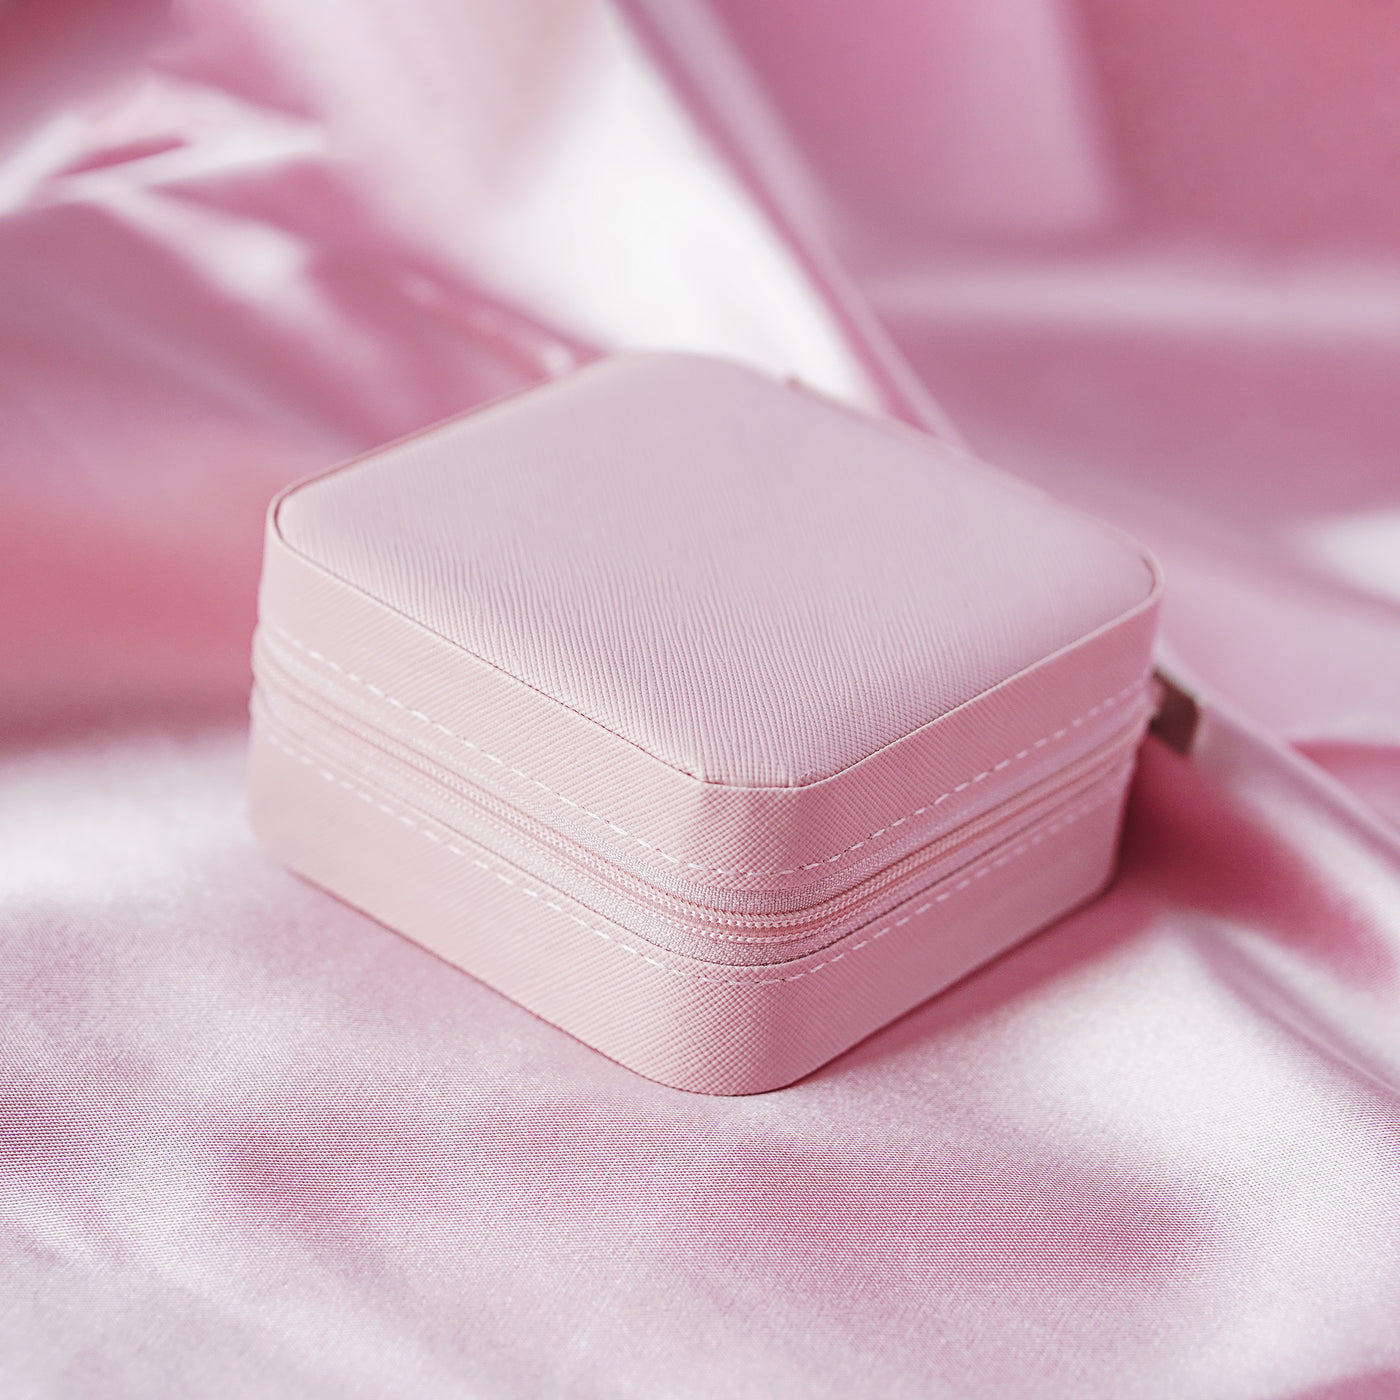 Rotaslietu kaste maza rozā krāsā